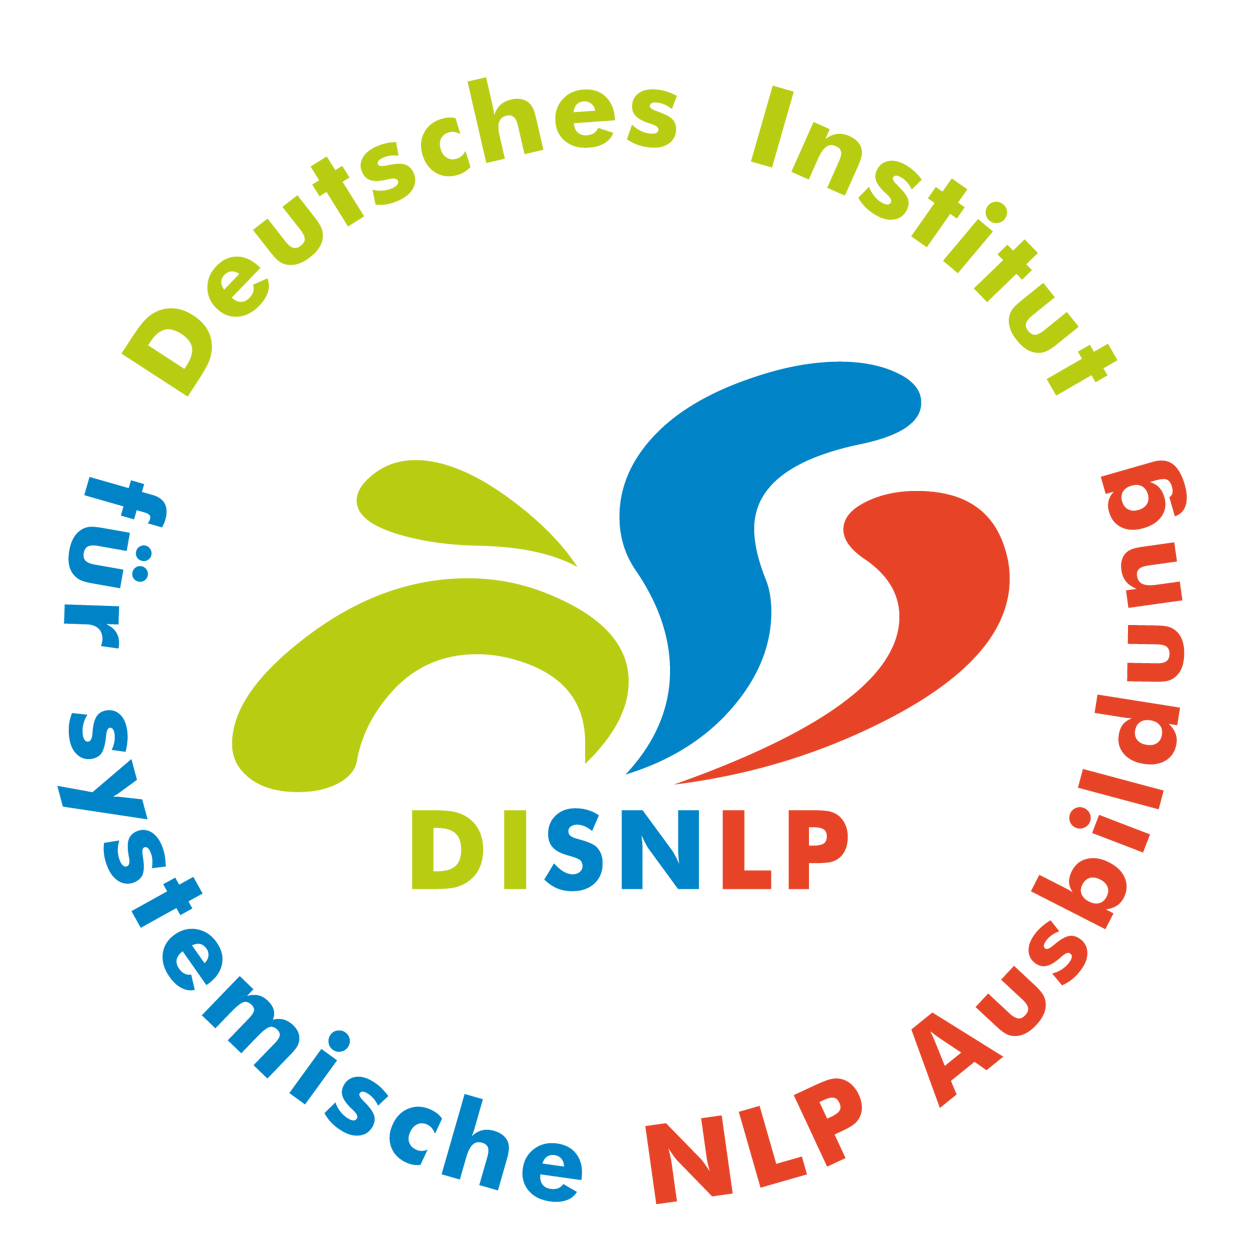 Seminar Selbstbewusstsein, Selbstvertrauen, Selbstwert, Selbstsicherheit stärken Luxemburg Stadt mit NLP Coaching Kurs für mehr Selbstbewusstsein